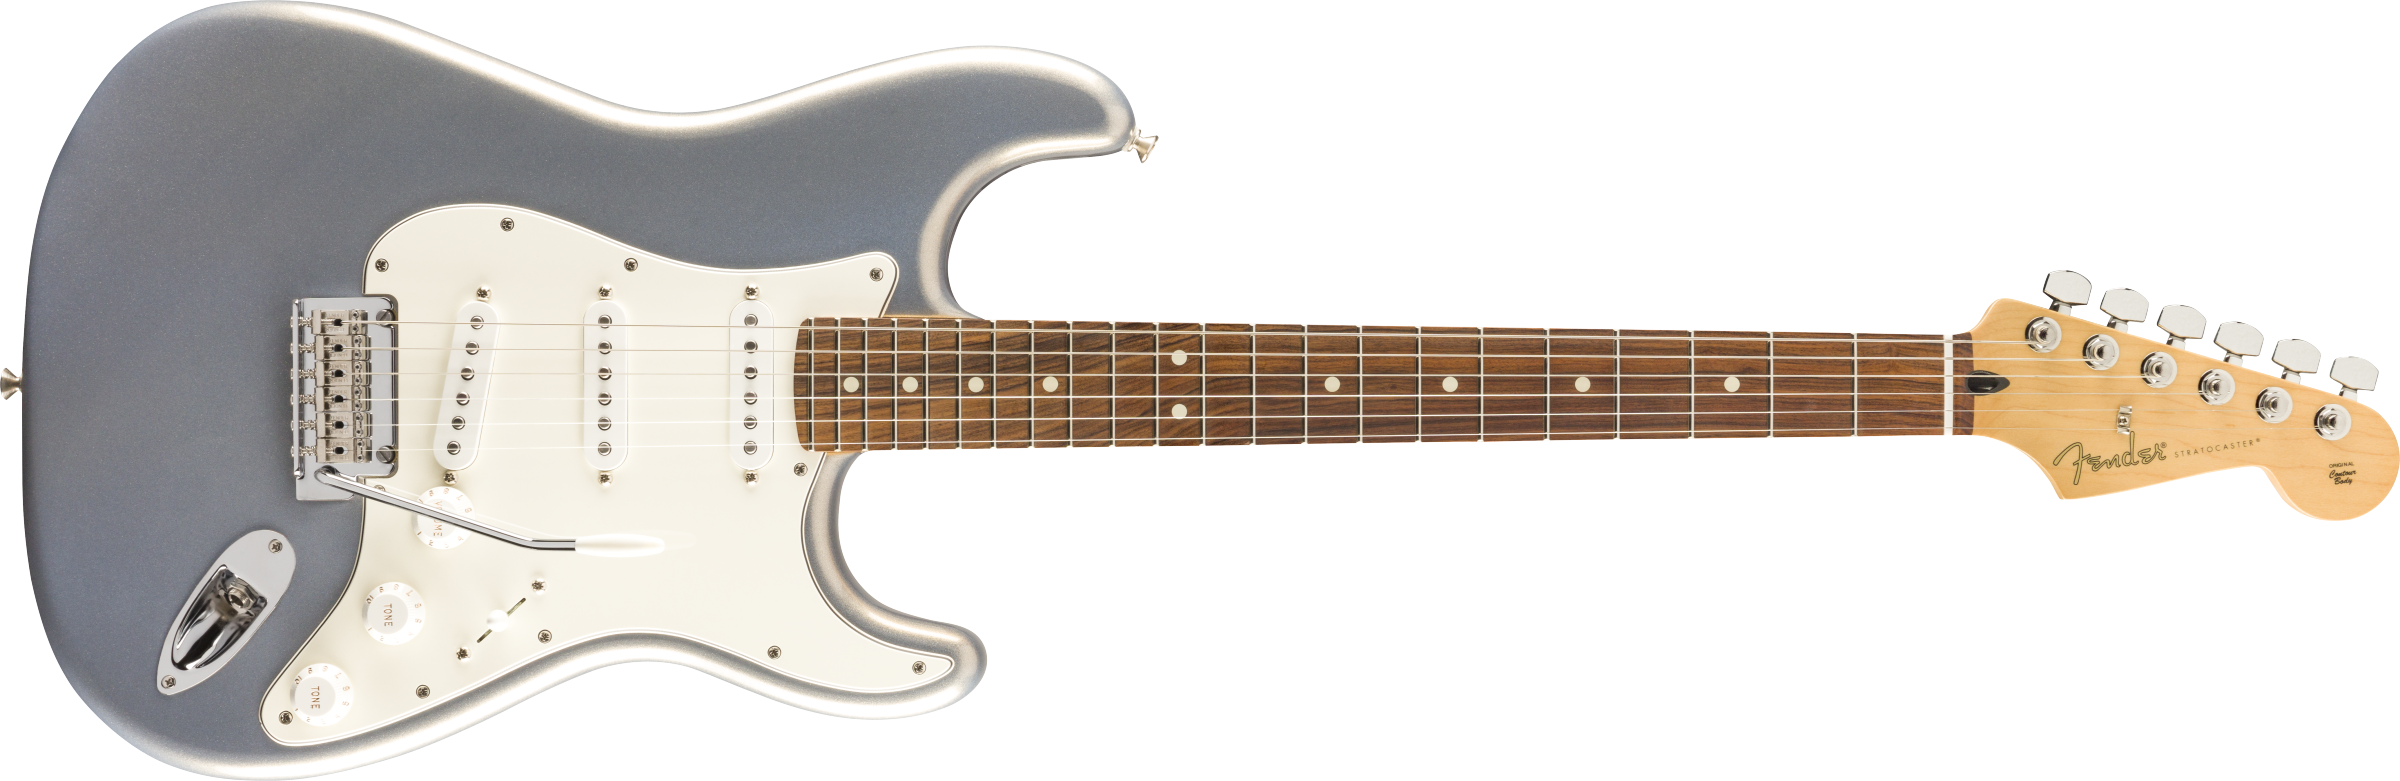 Chitare electrice - Chitara electrica Fender Player Stratocaster Pau Ferro Silver, guitarshop.ro